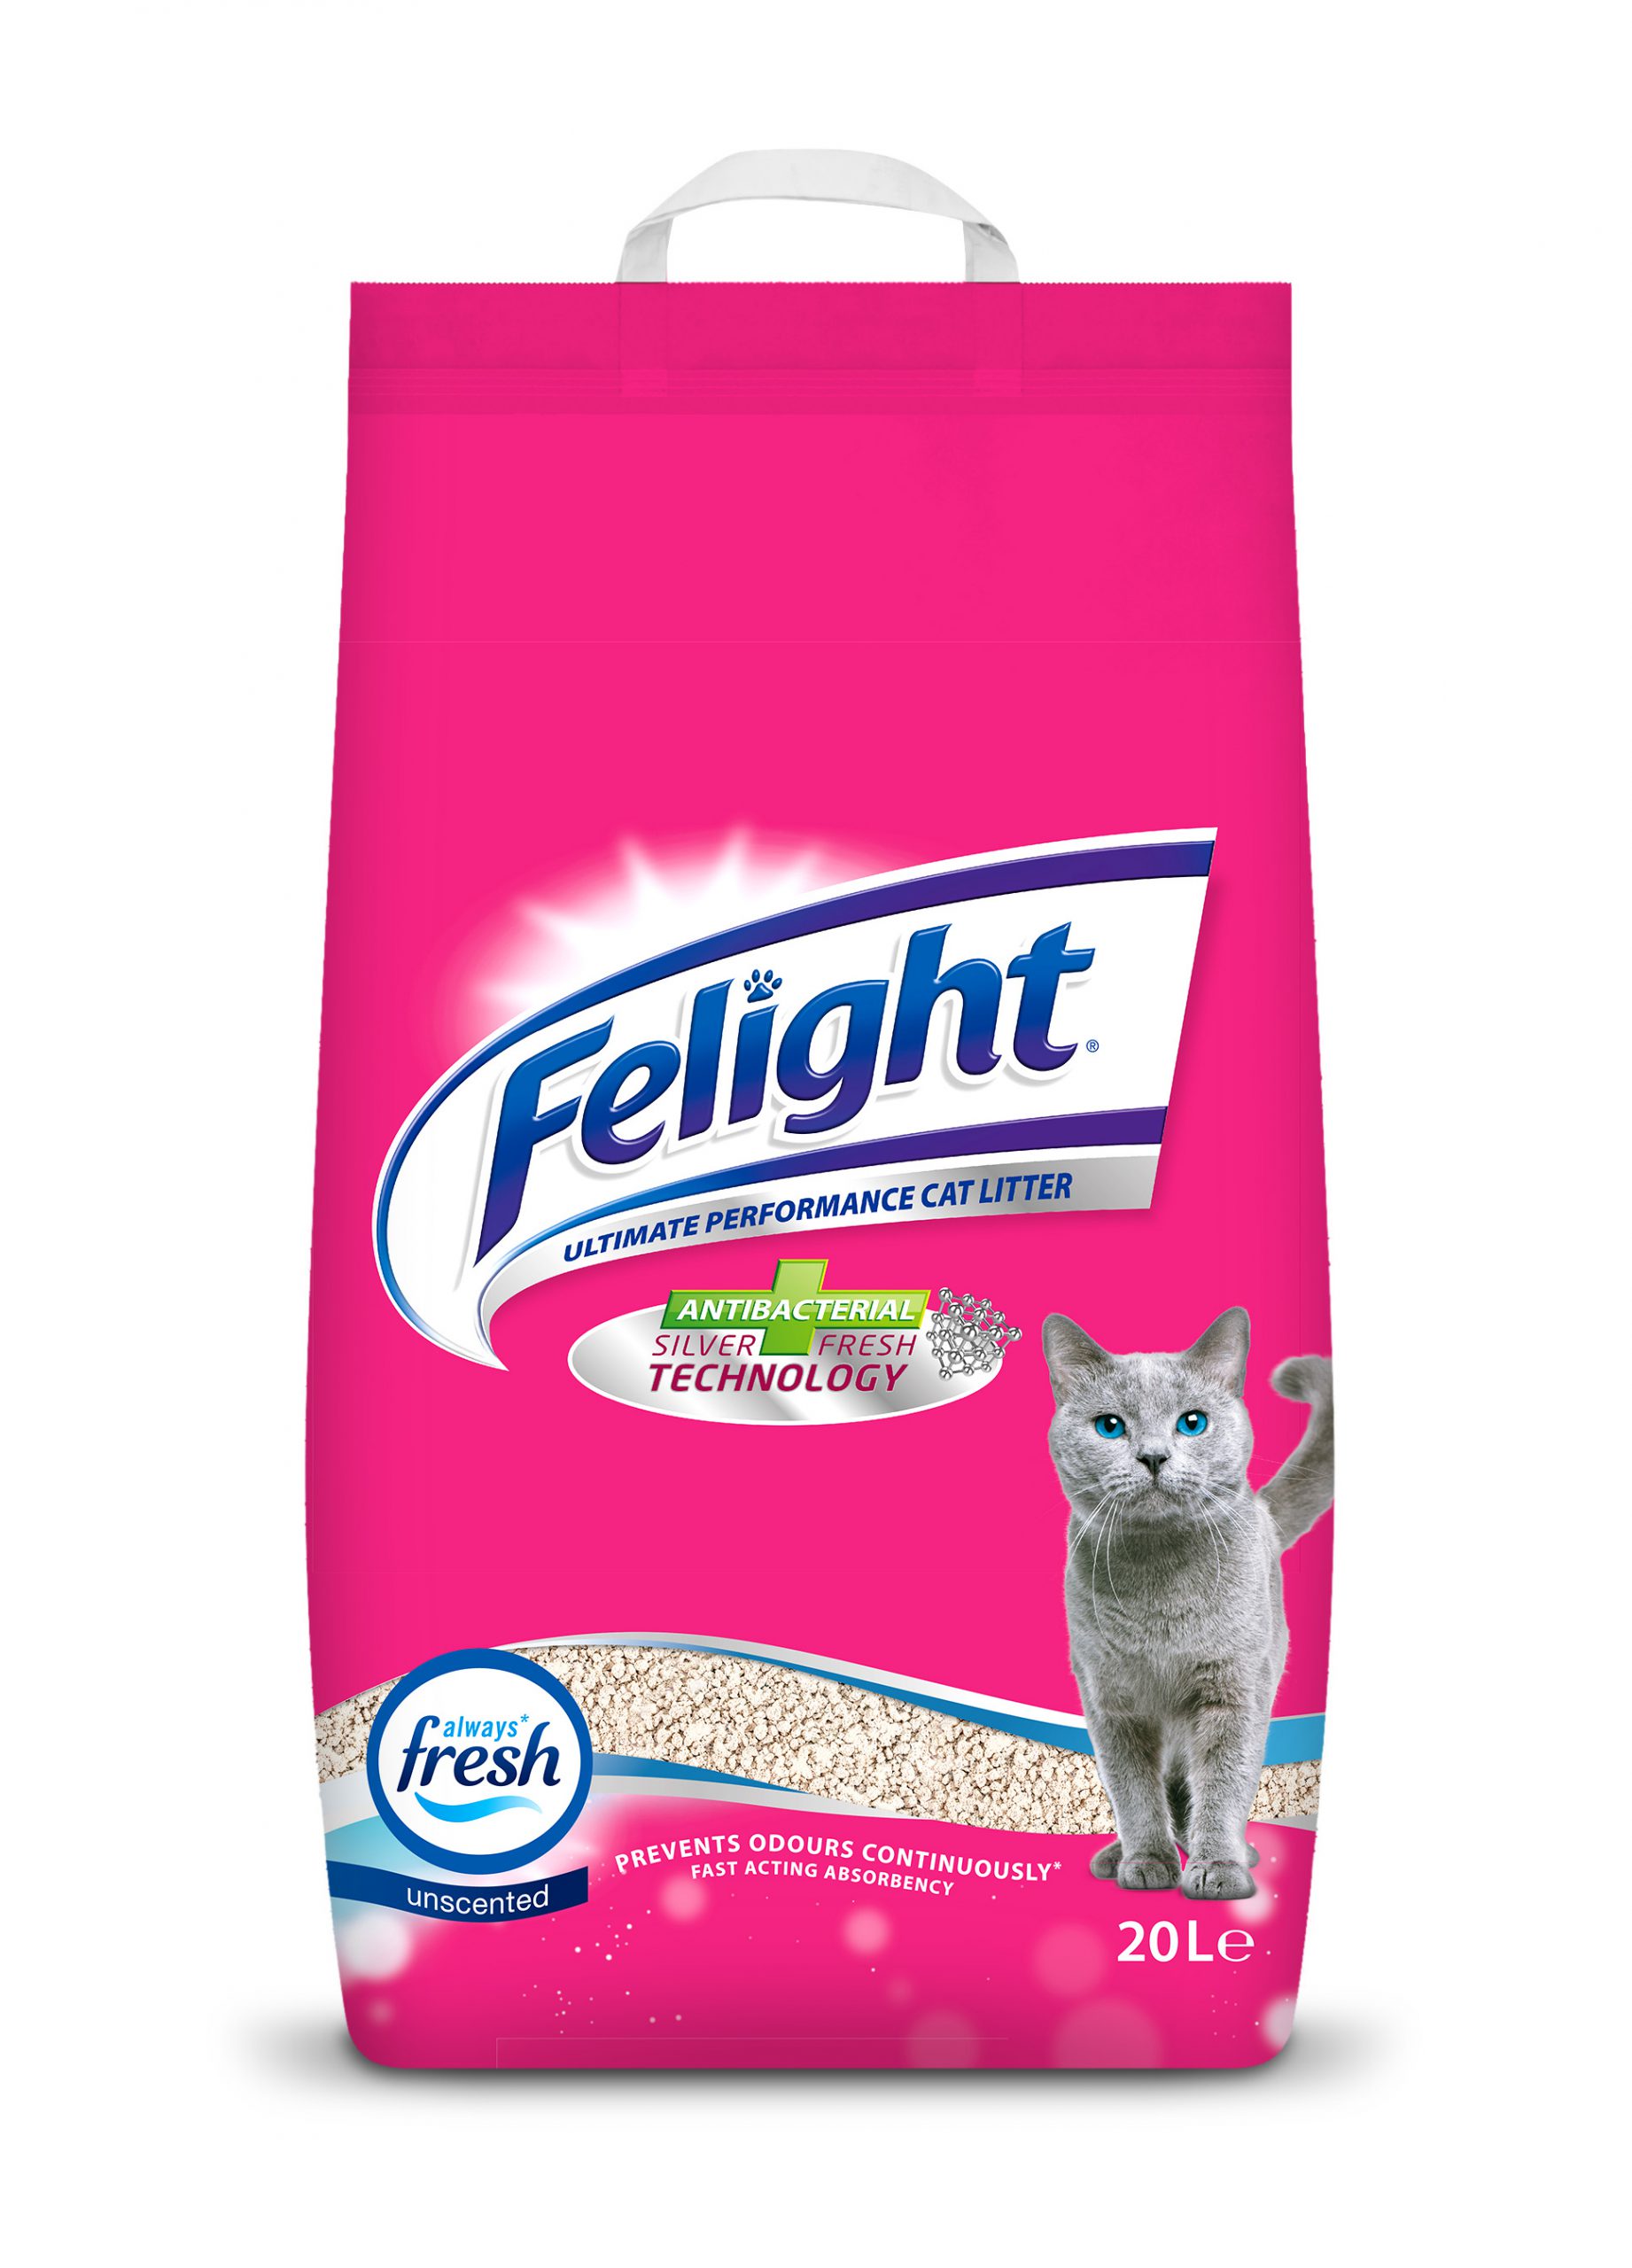 Felight Antibacterial NonClumping Cat Litter 20L Bob Martin